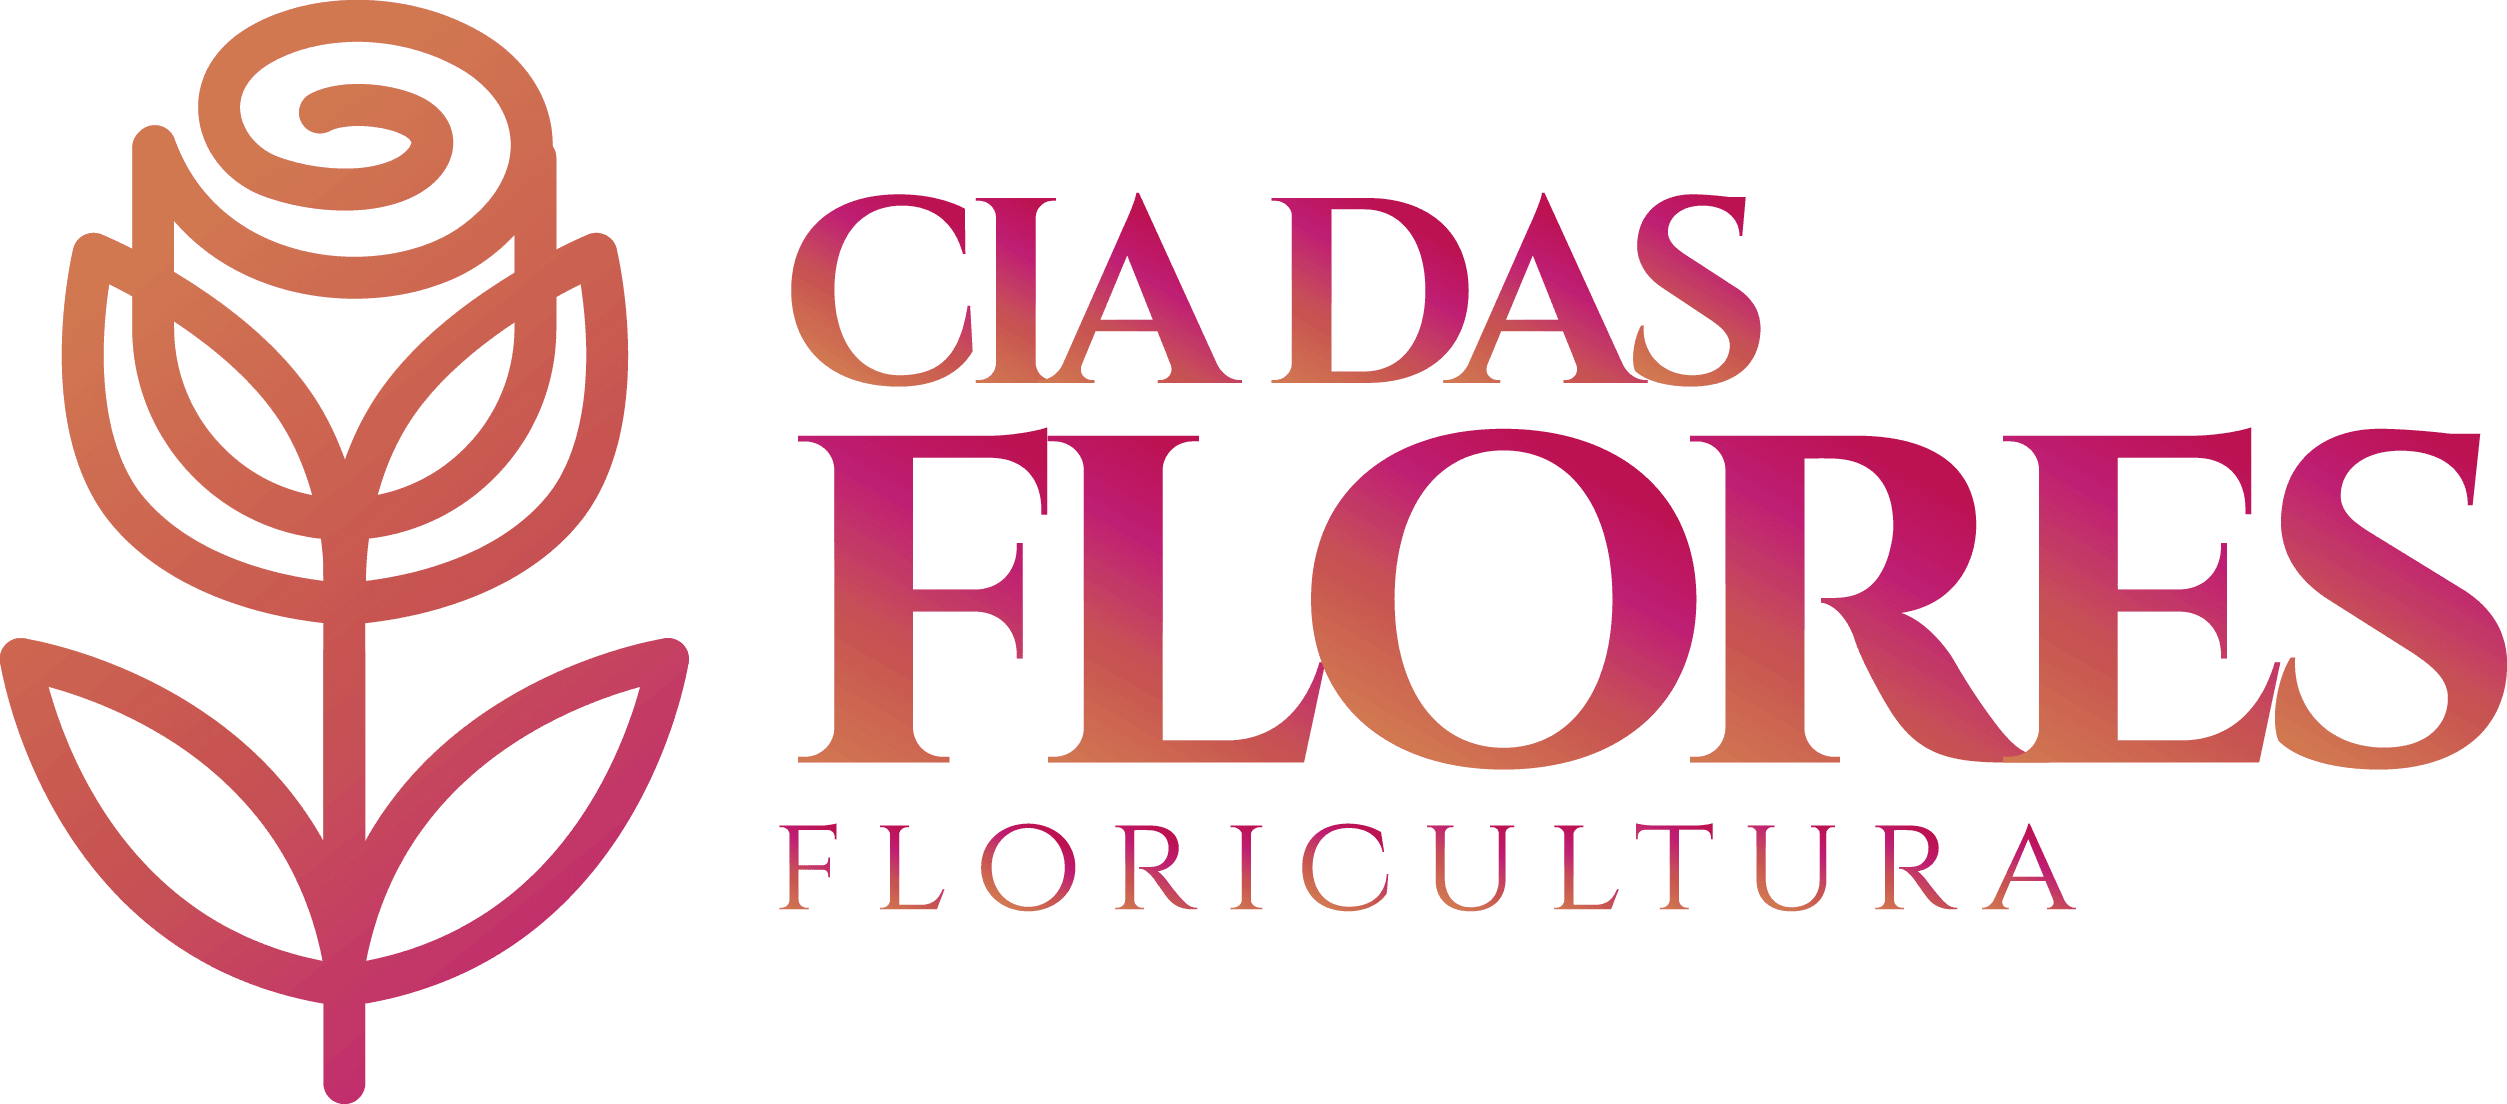 Floricultura Cia das Flores